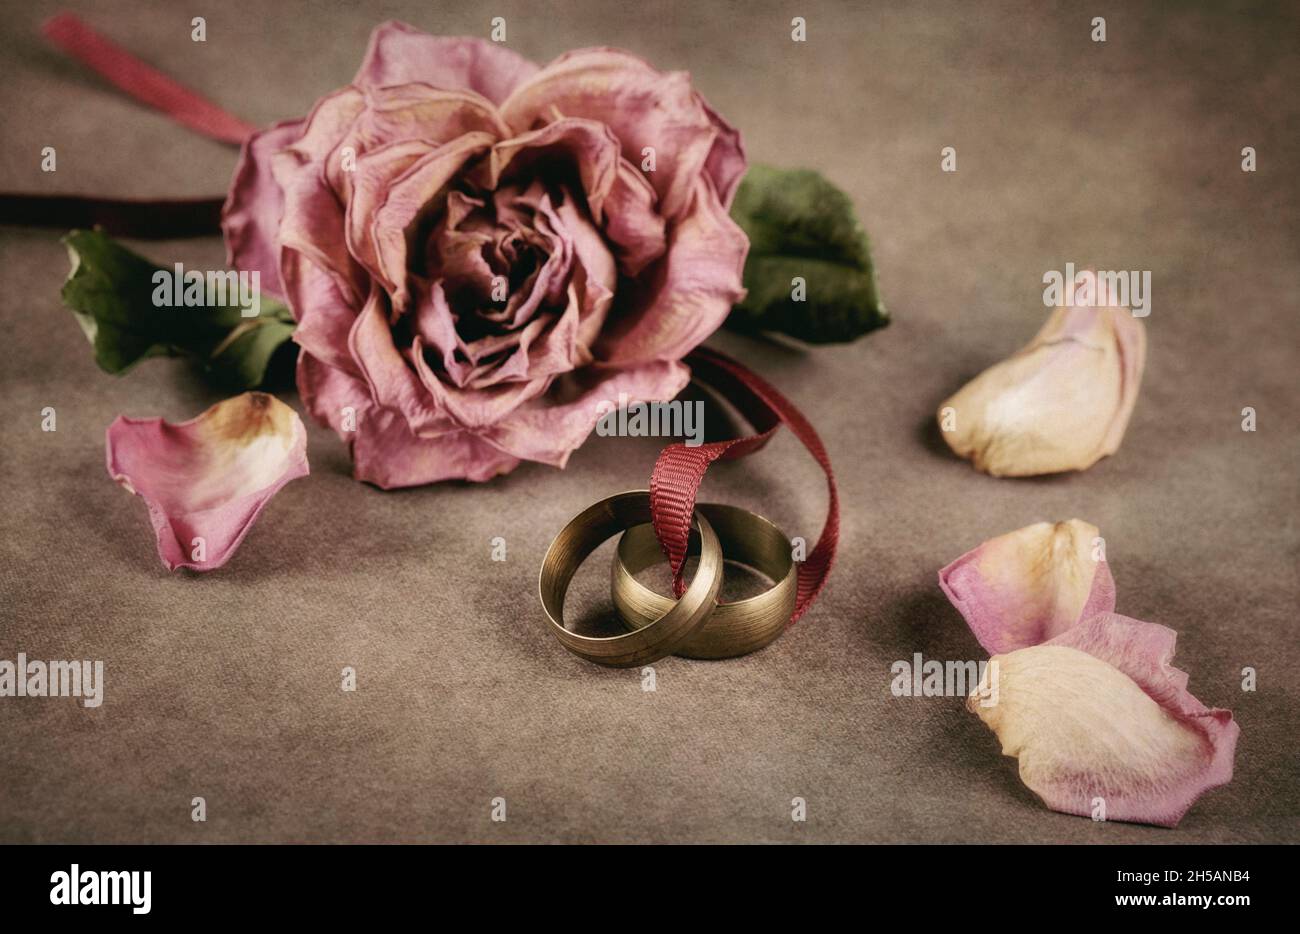 Rosa marchita y dos anillos Foto de stock